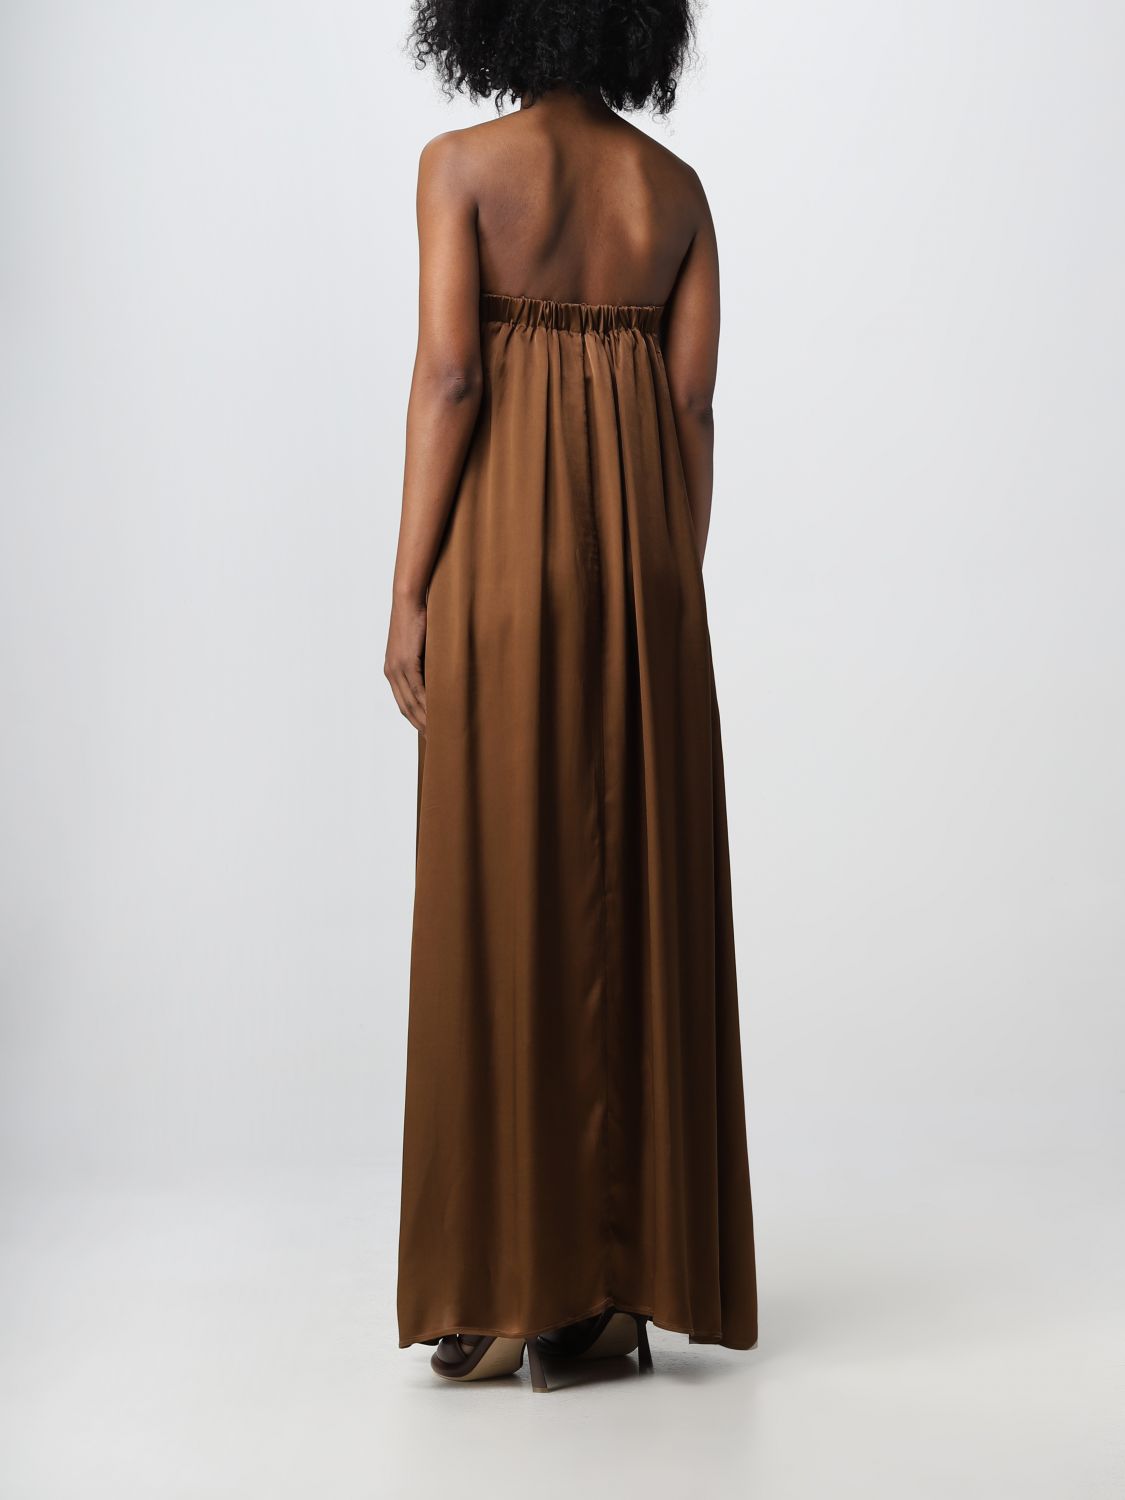 Vestido Semicouture: Vestido Semicouture para mujer marrón oscuro 2